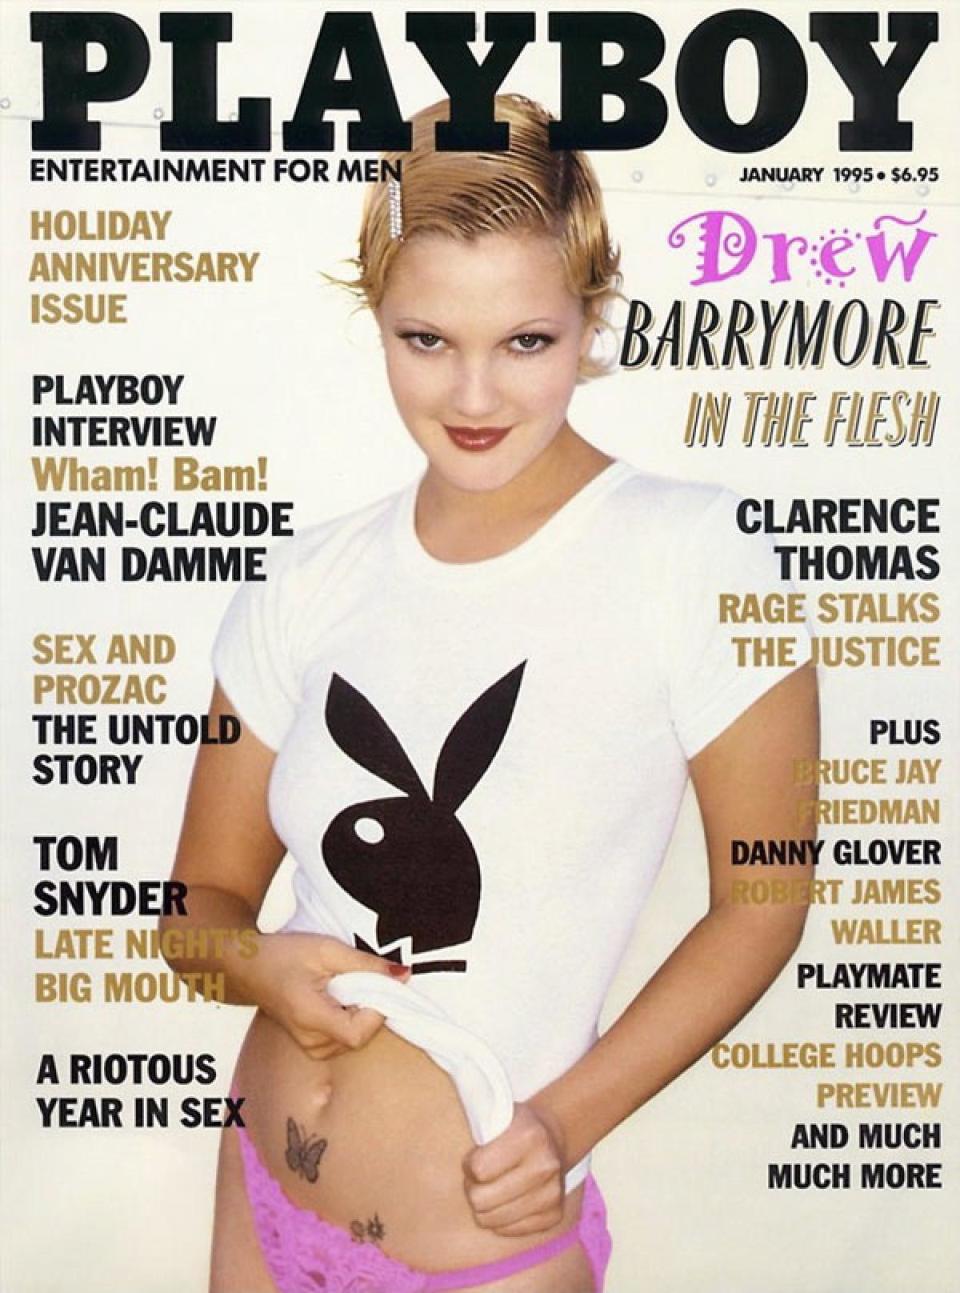 <p>Bevor sie ein seriöser Hollywood-Star wurde, war Drew Barrymore der Wildfang der Branche. Im Alter von nur 19 Jahren posierte sie 1995 in einem weißen Playboy Bunny-T-Shirt und einem pinken Slip für das Cover. An ihrem 20. Geburtstag schickte Barrymores Patenonkel Steven Spielberg ihr die Nachricht „Bedeck dich“, begleitet von bearbeiteten Fotos des Playboy-Shootings, auf denen sie bekleidet aussah. <br><em>[Bild: Playboy]</em> </p>